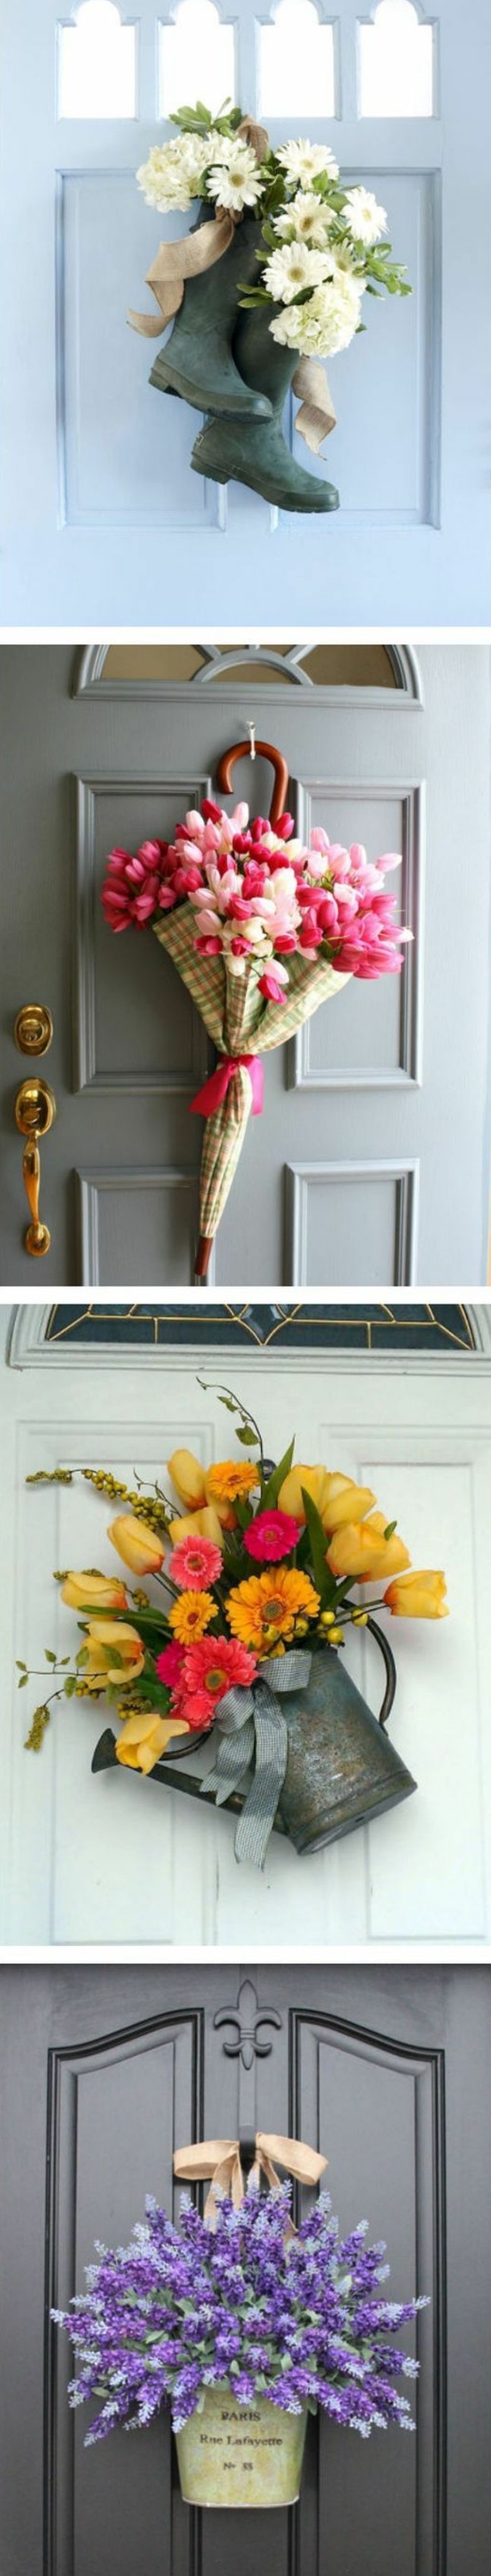 decoration-florale-porte-entrée-maison-idée-ctivité-créative-printemps-bouquets-de-fleurs-dans-des-bottes-parapluie-fleurie-et-arroisoir-pleine-de-fleurs-bricolage-adulte